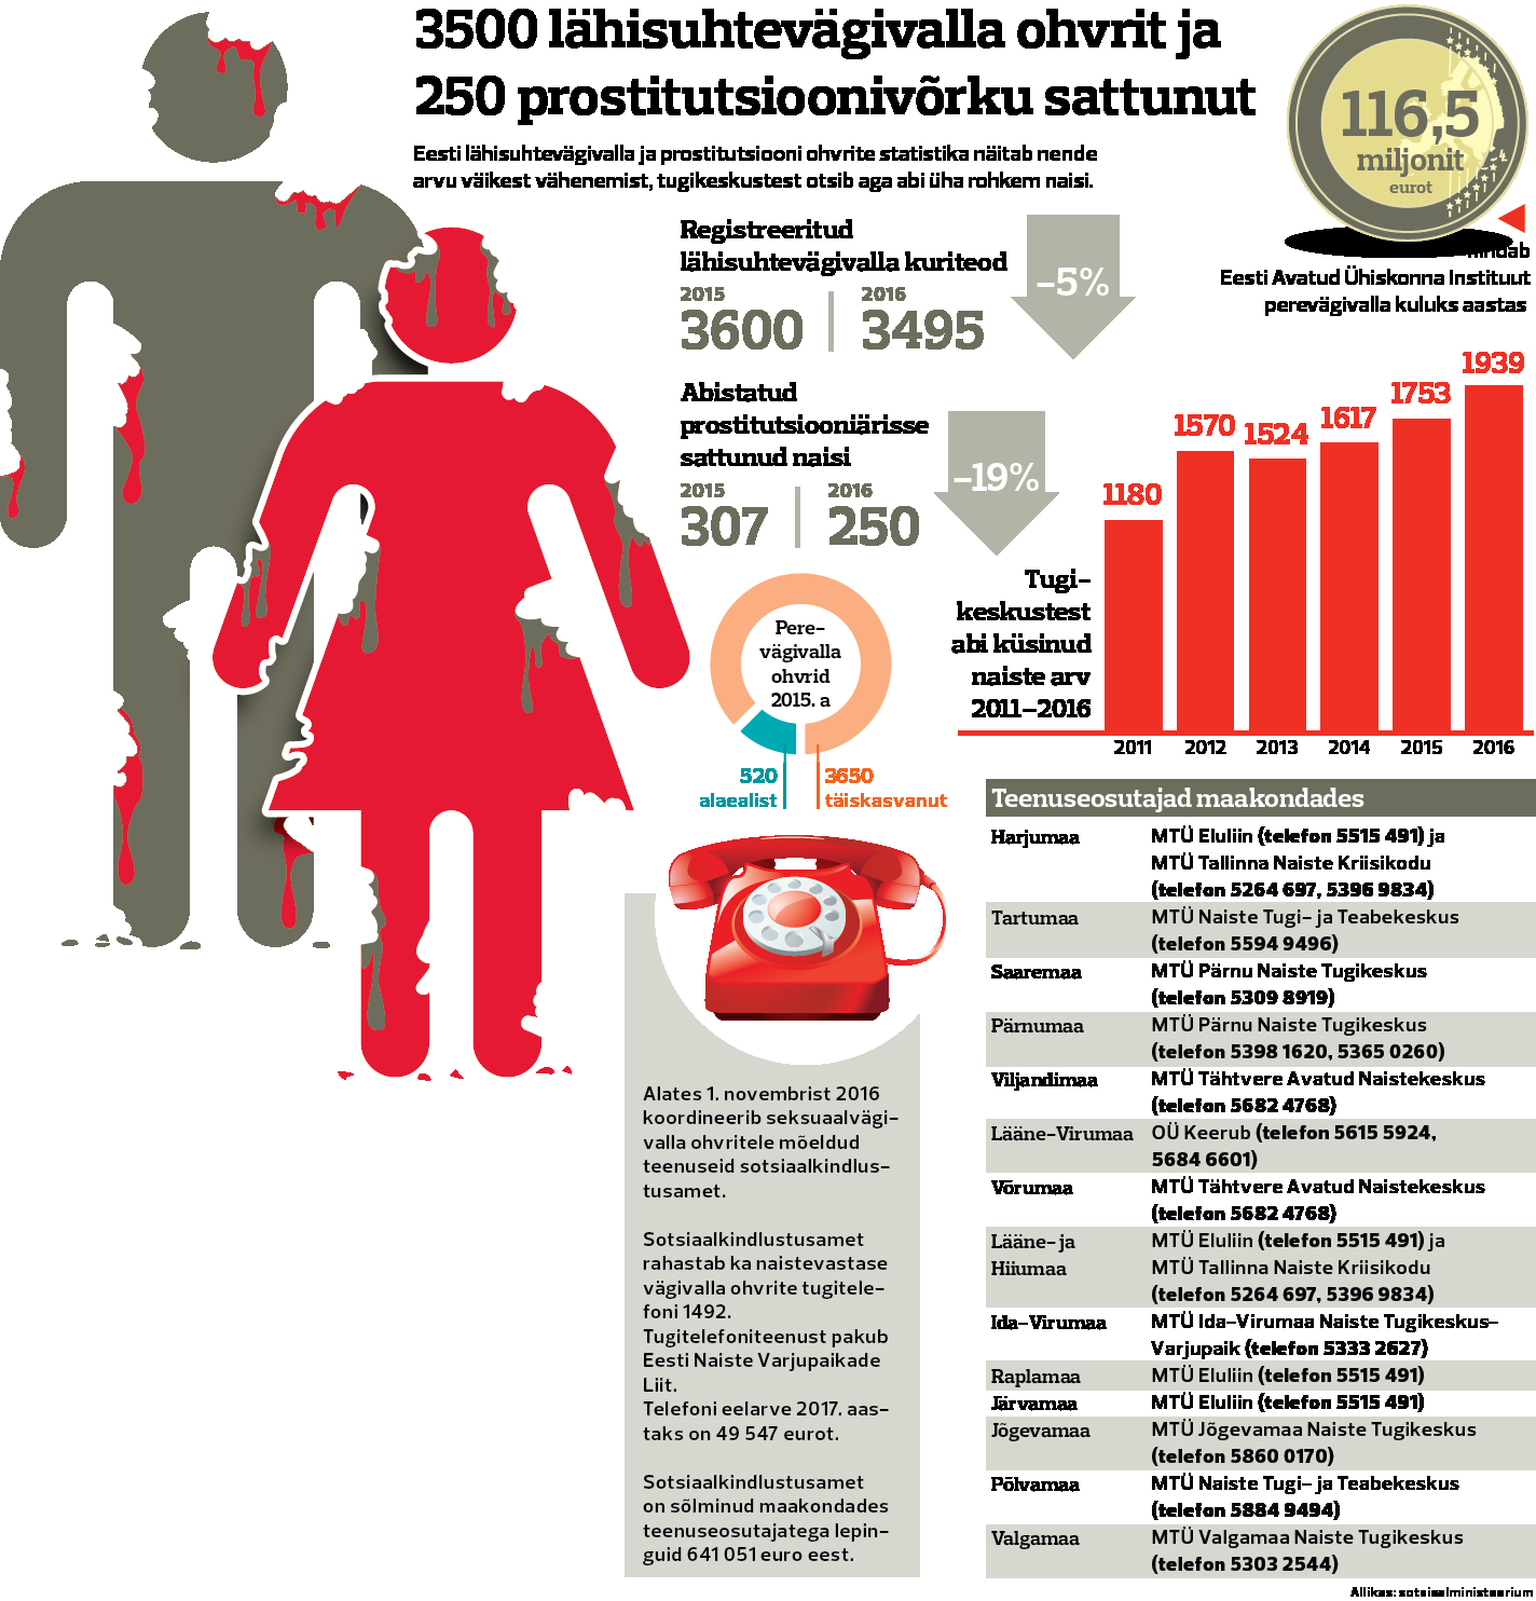 Lähisuhtevägivalla ja prostitutsiooni ohvrid Eestis